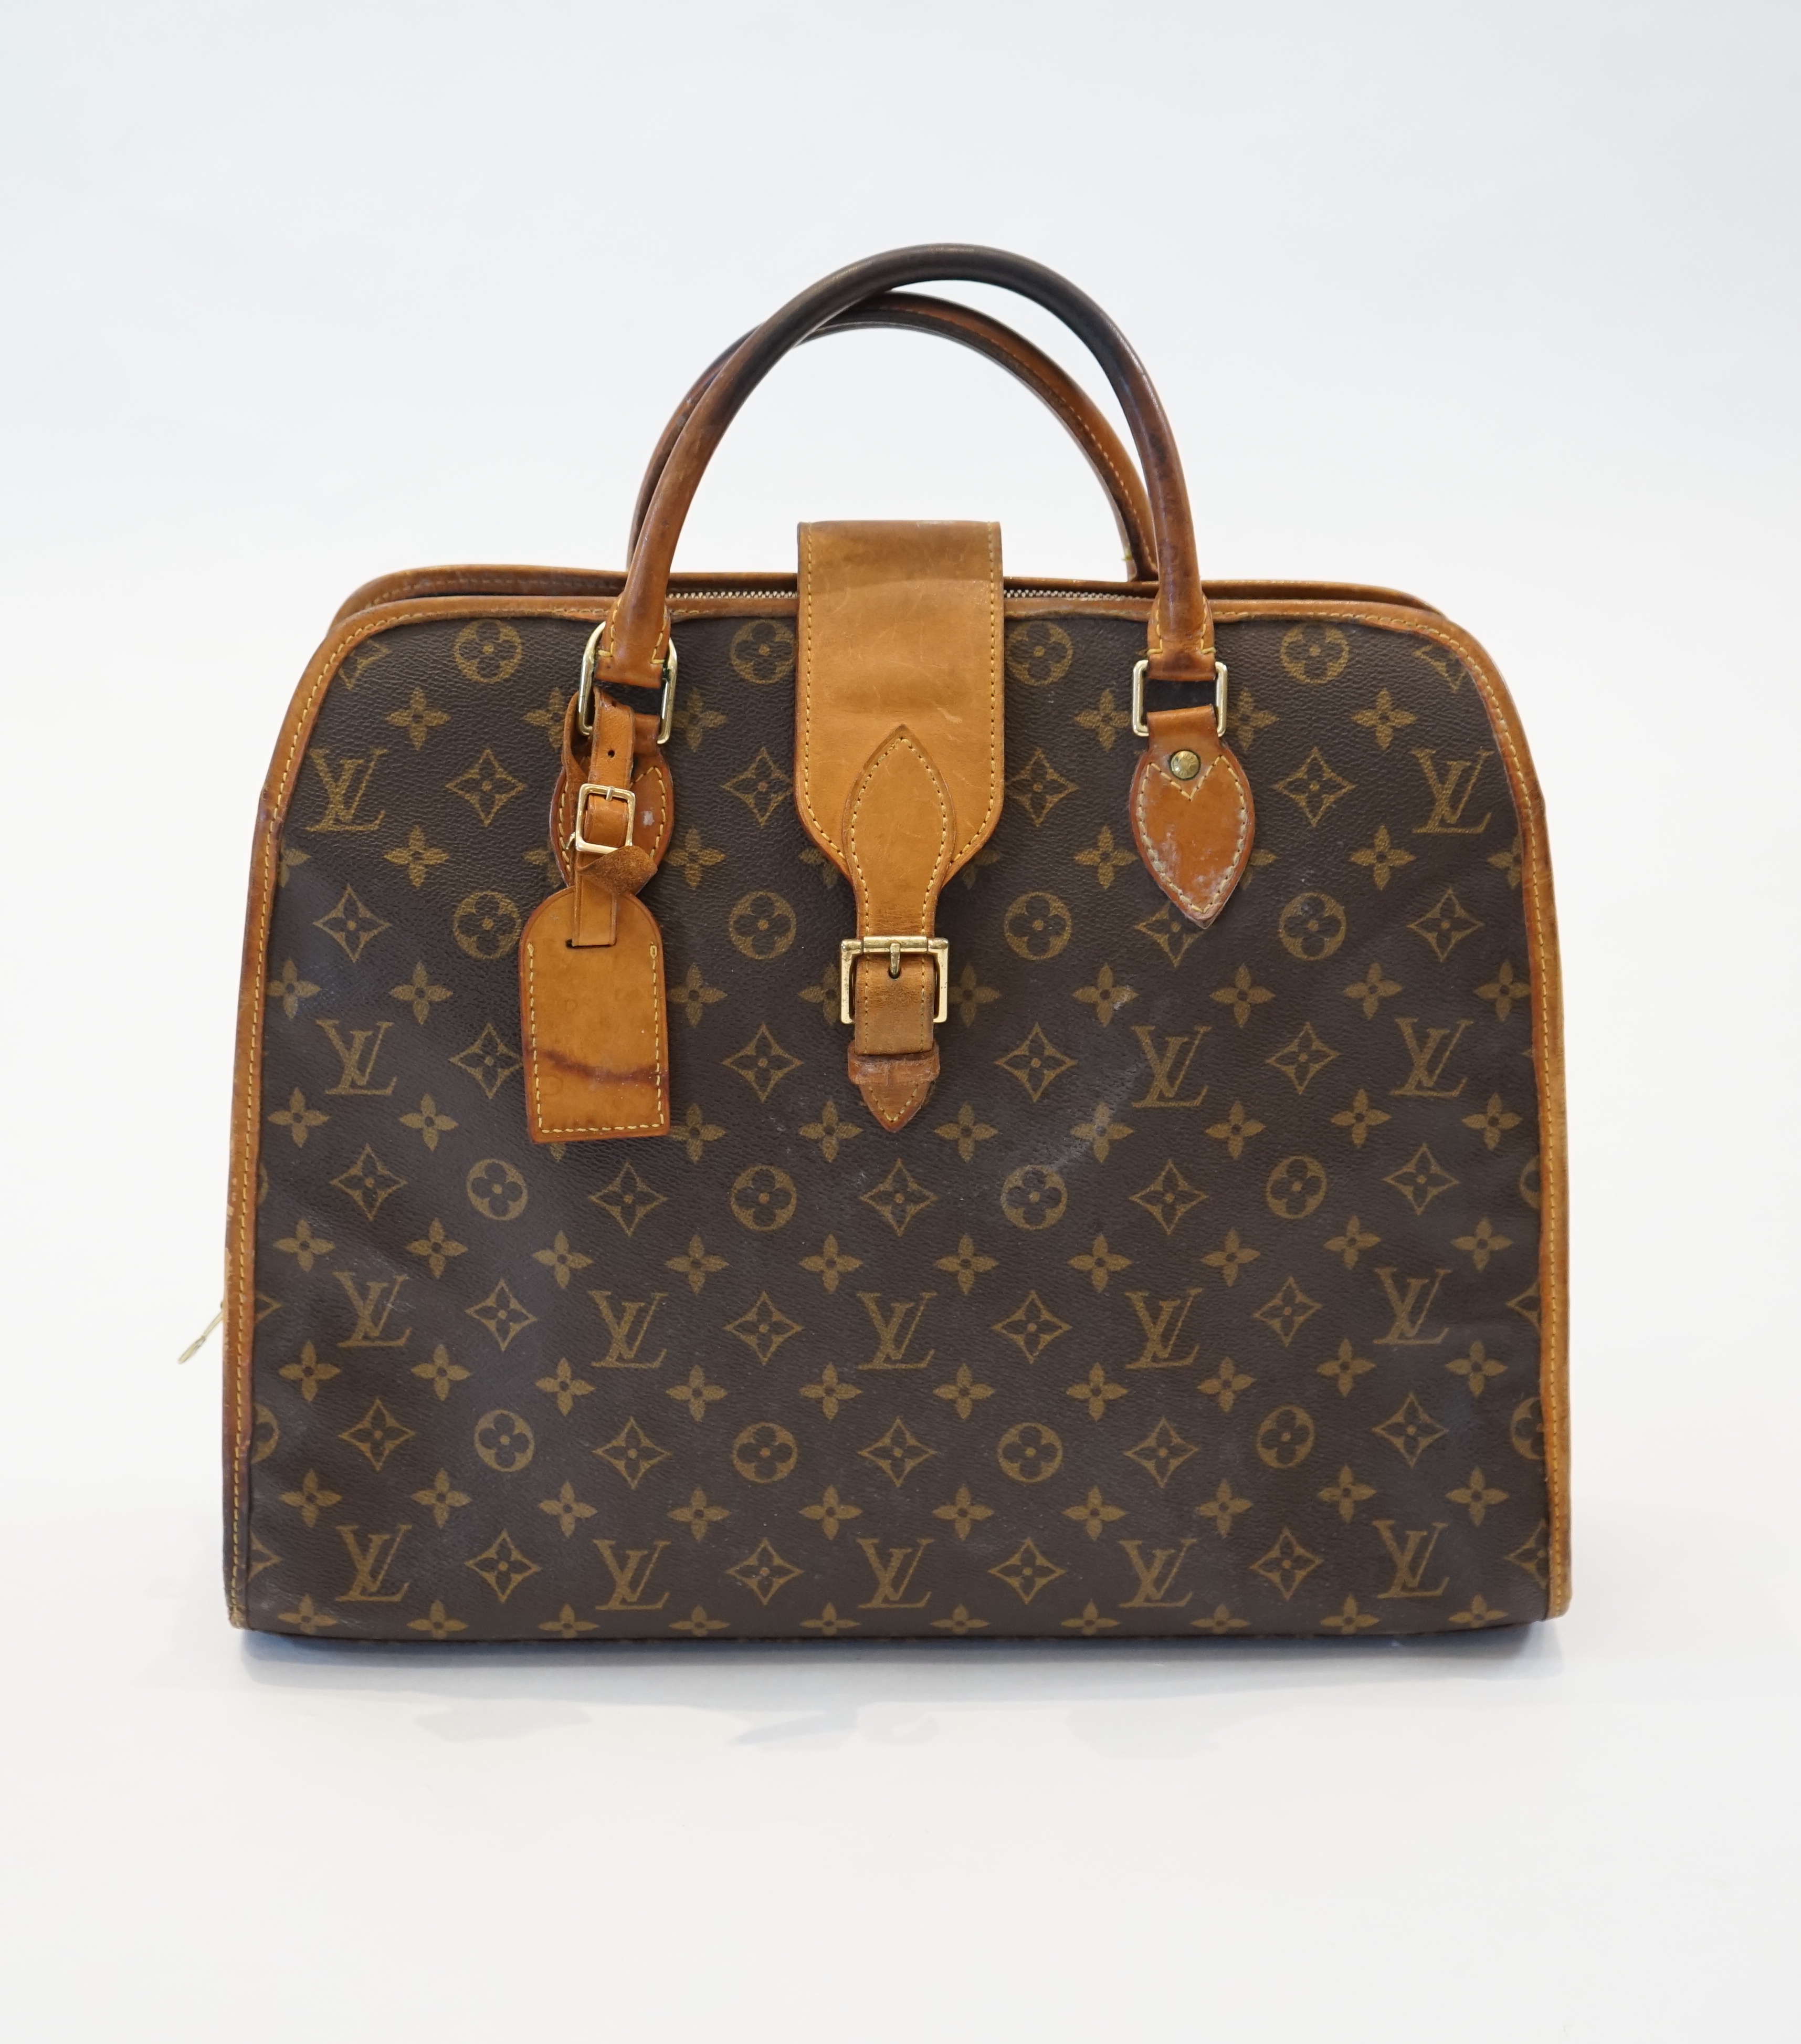 A Vintage Louis Vuitton satchel briefcase width 41cm, depth 11cm, height 32cm